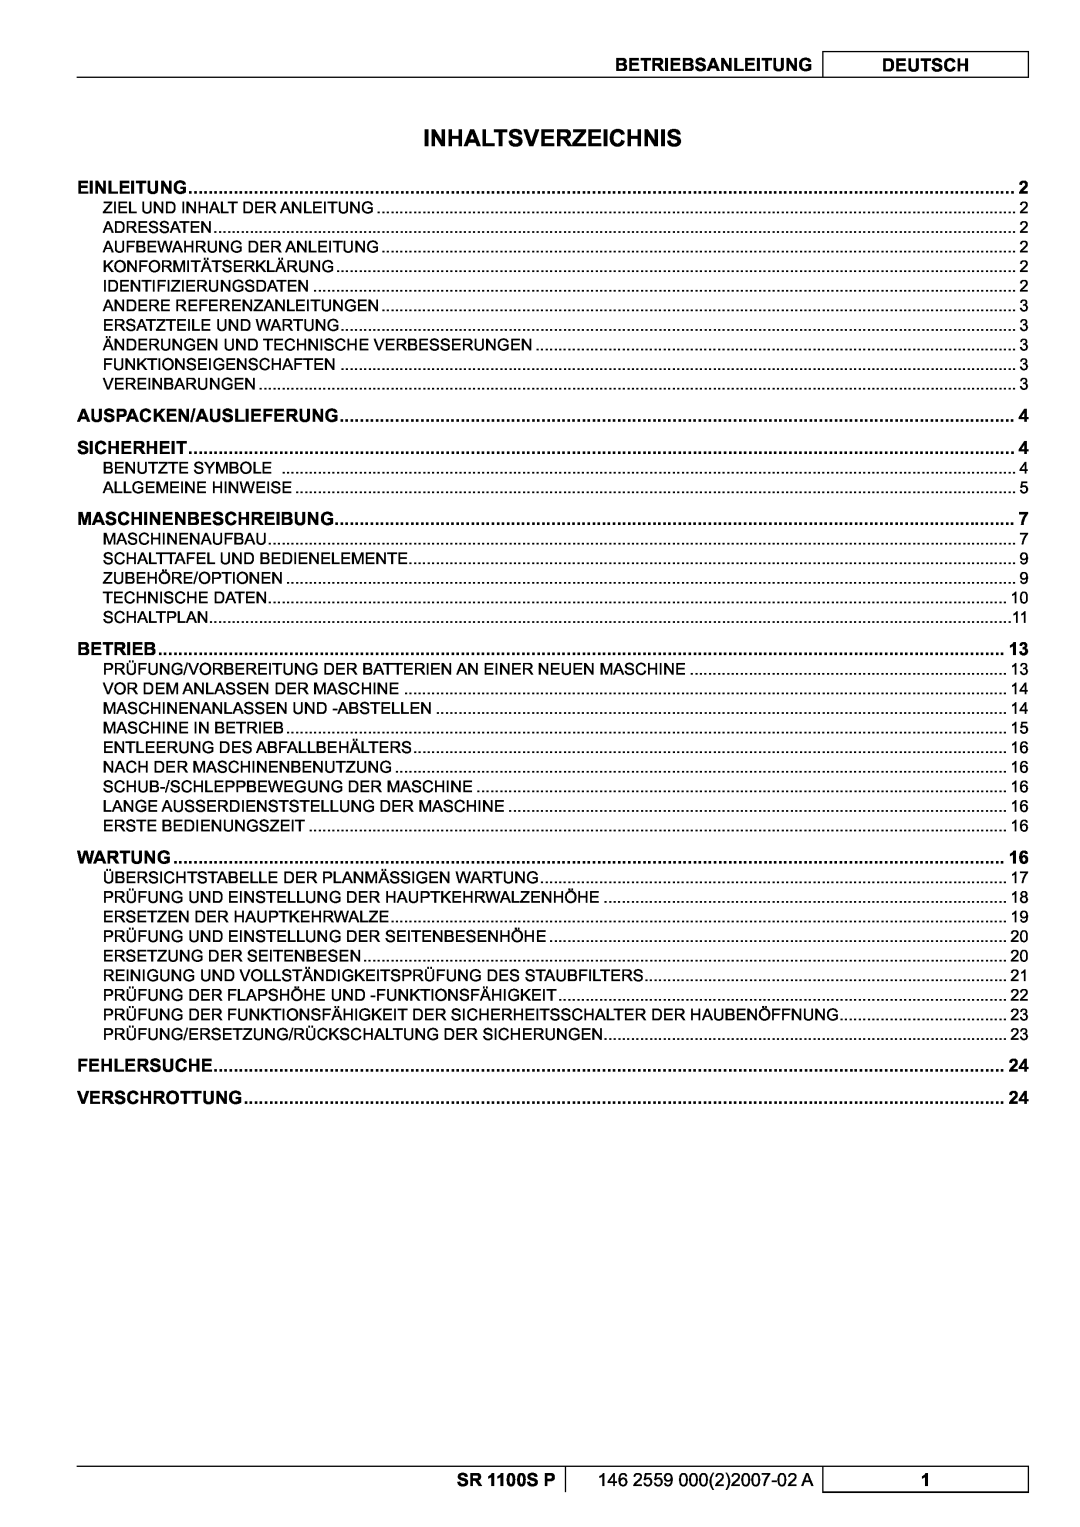 Nilfisk-Advance America manuel dutilisation Inhaltsverzeichnis, Betriebsanleitung, Deutsch, SR 1100S P 